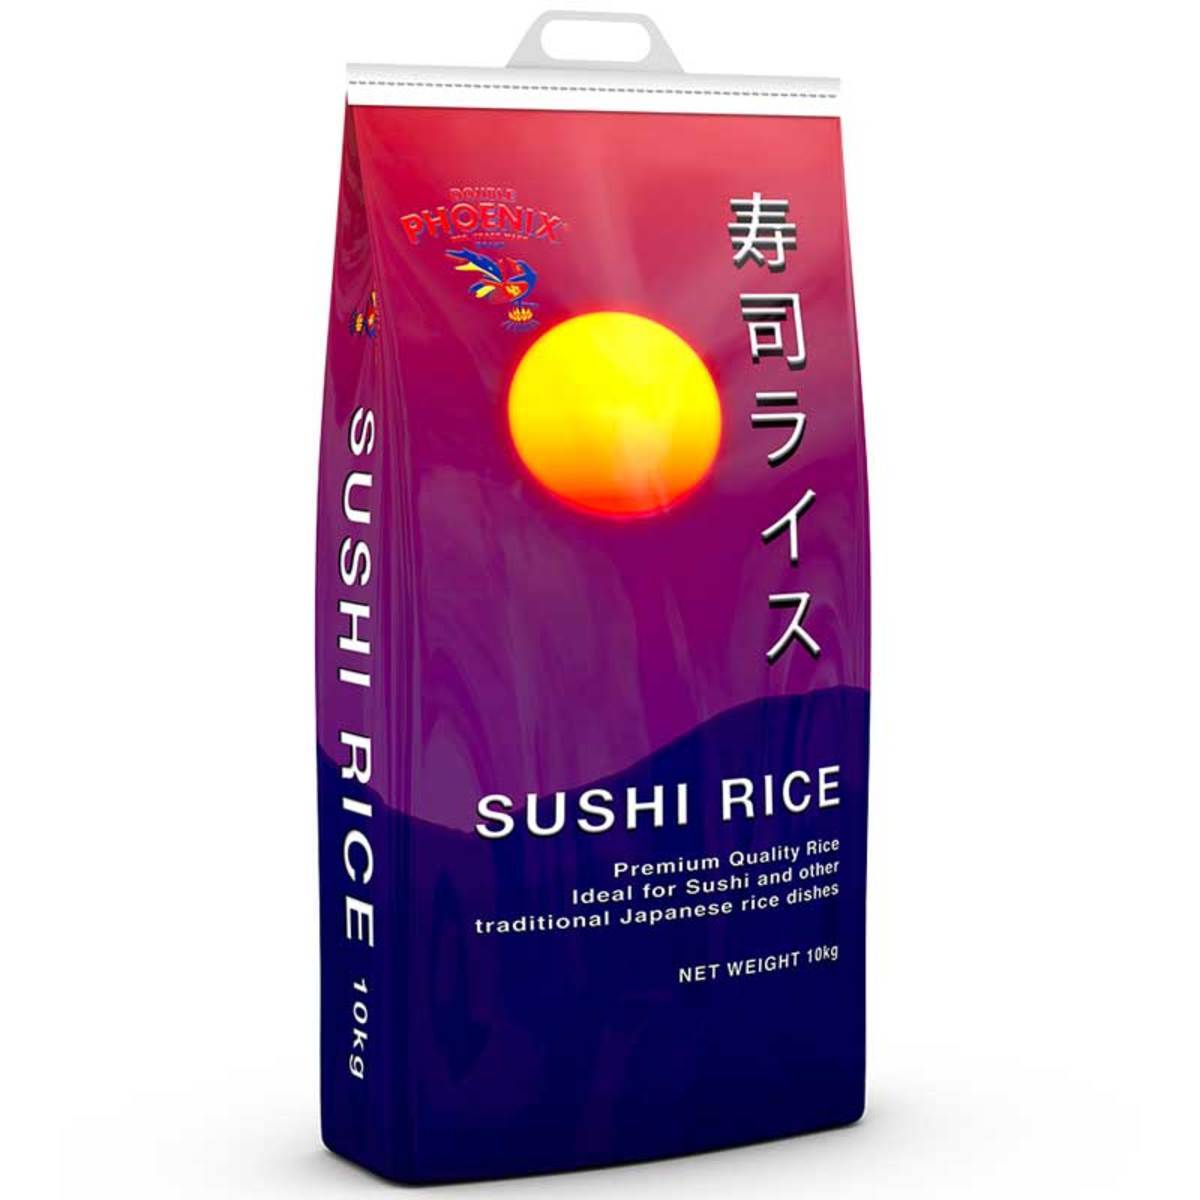 Phoenix Koshihikari Sushi Rice, 10kg